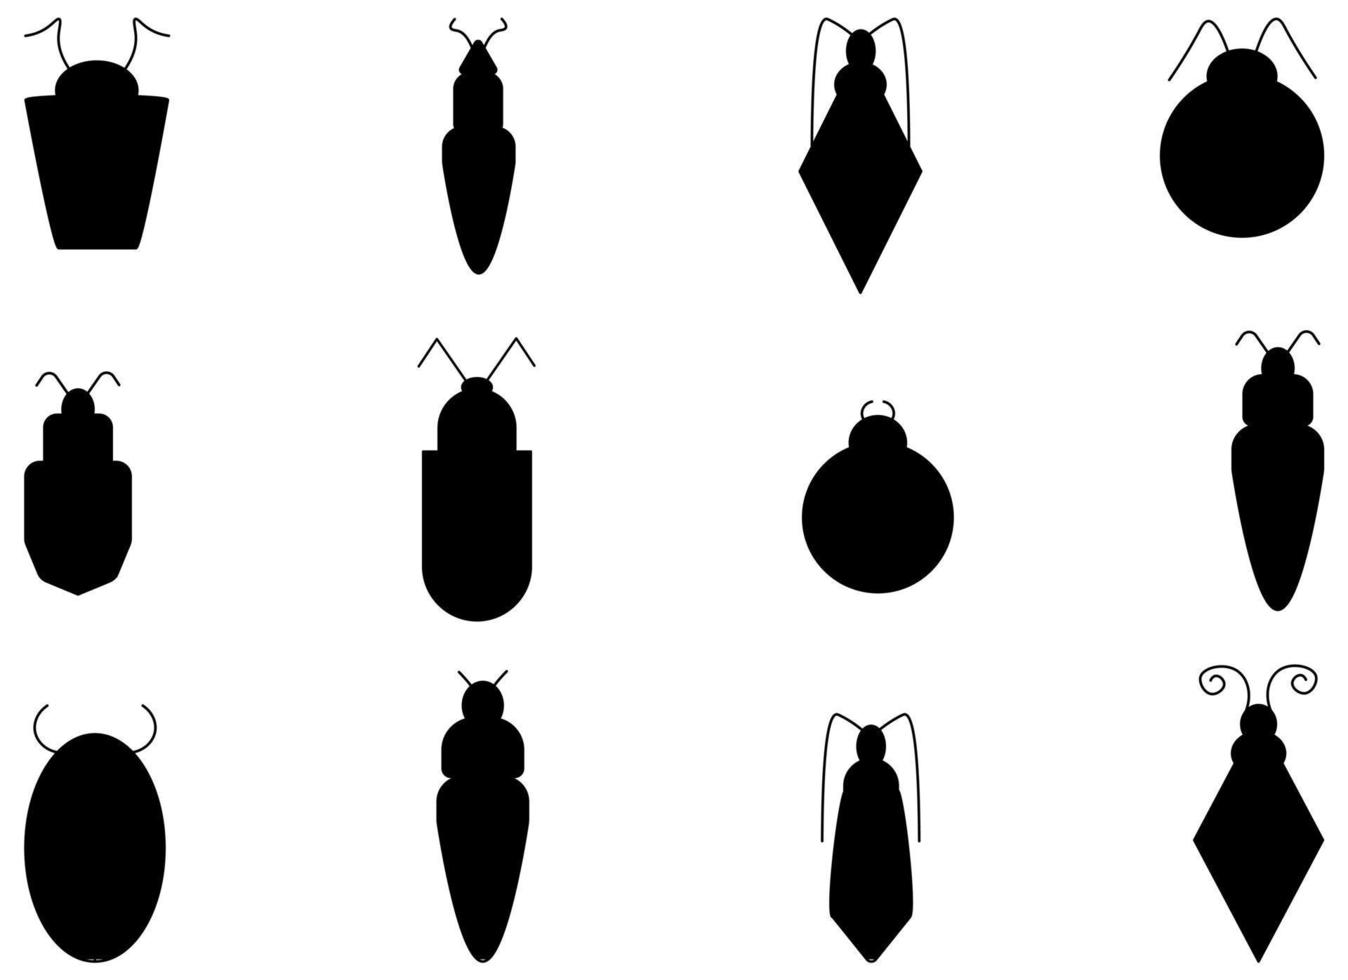 flacher Insekt-Bug-Vektor-Illustrationssatz. satz der schwarzen umrisswanzenillustration. Vektor-Schwarz-Weiß-Symbole verschiedener Insekten vektor